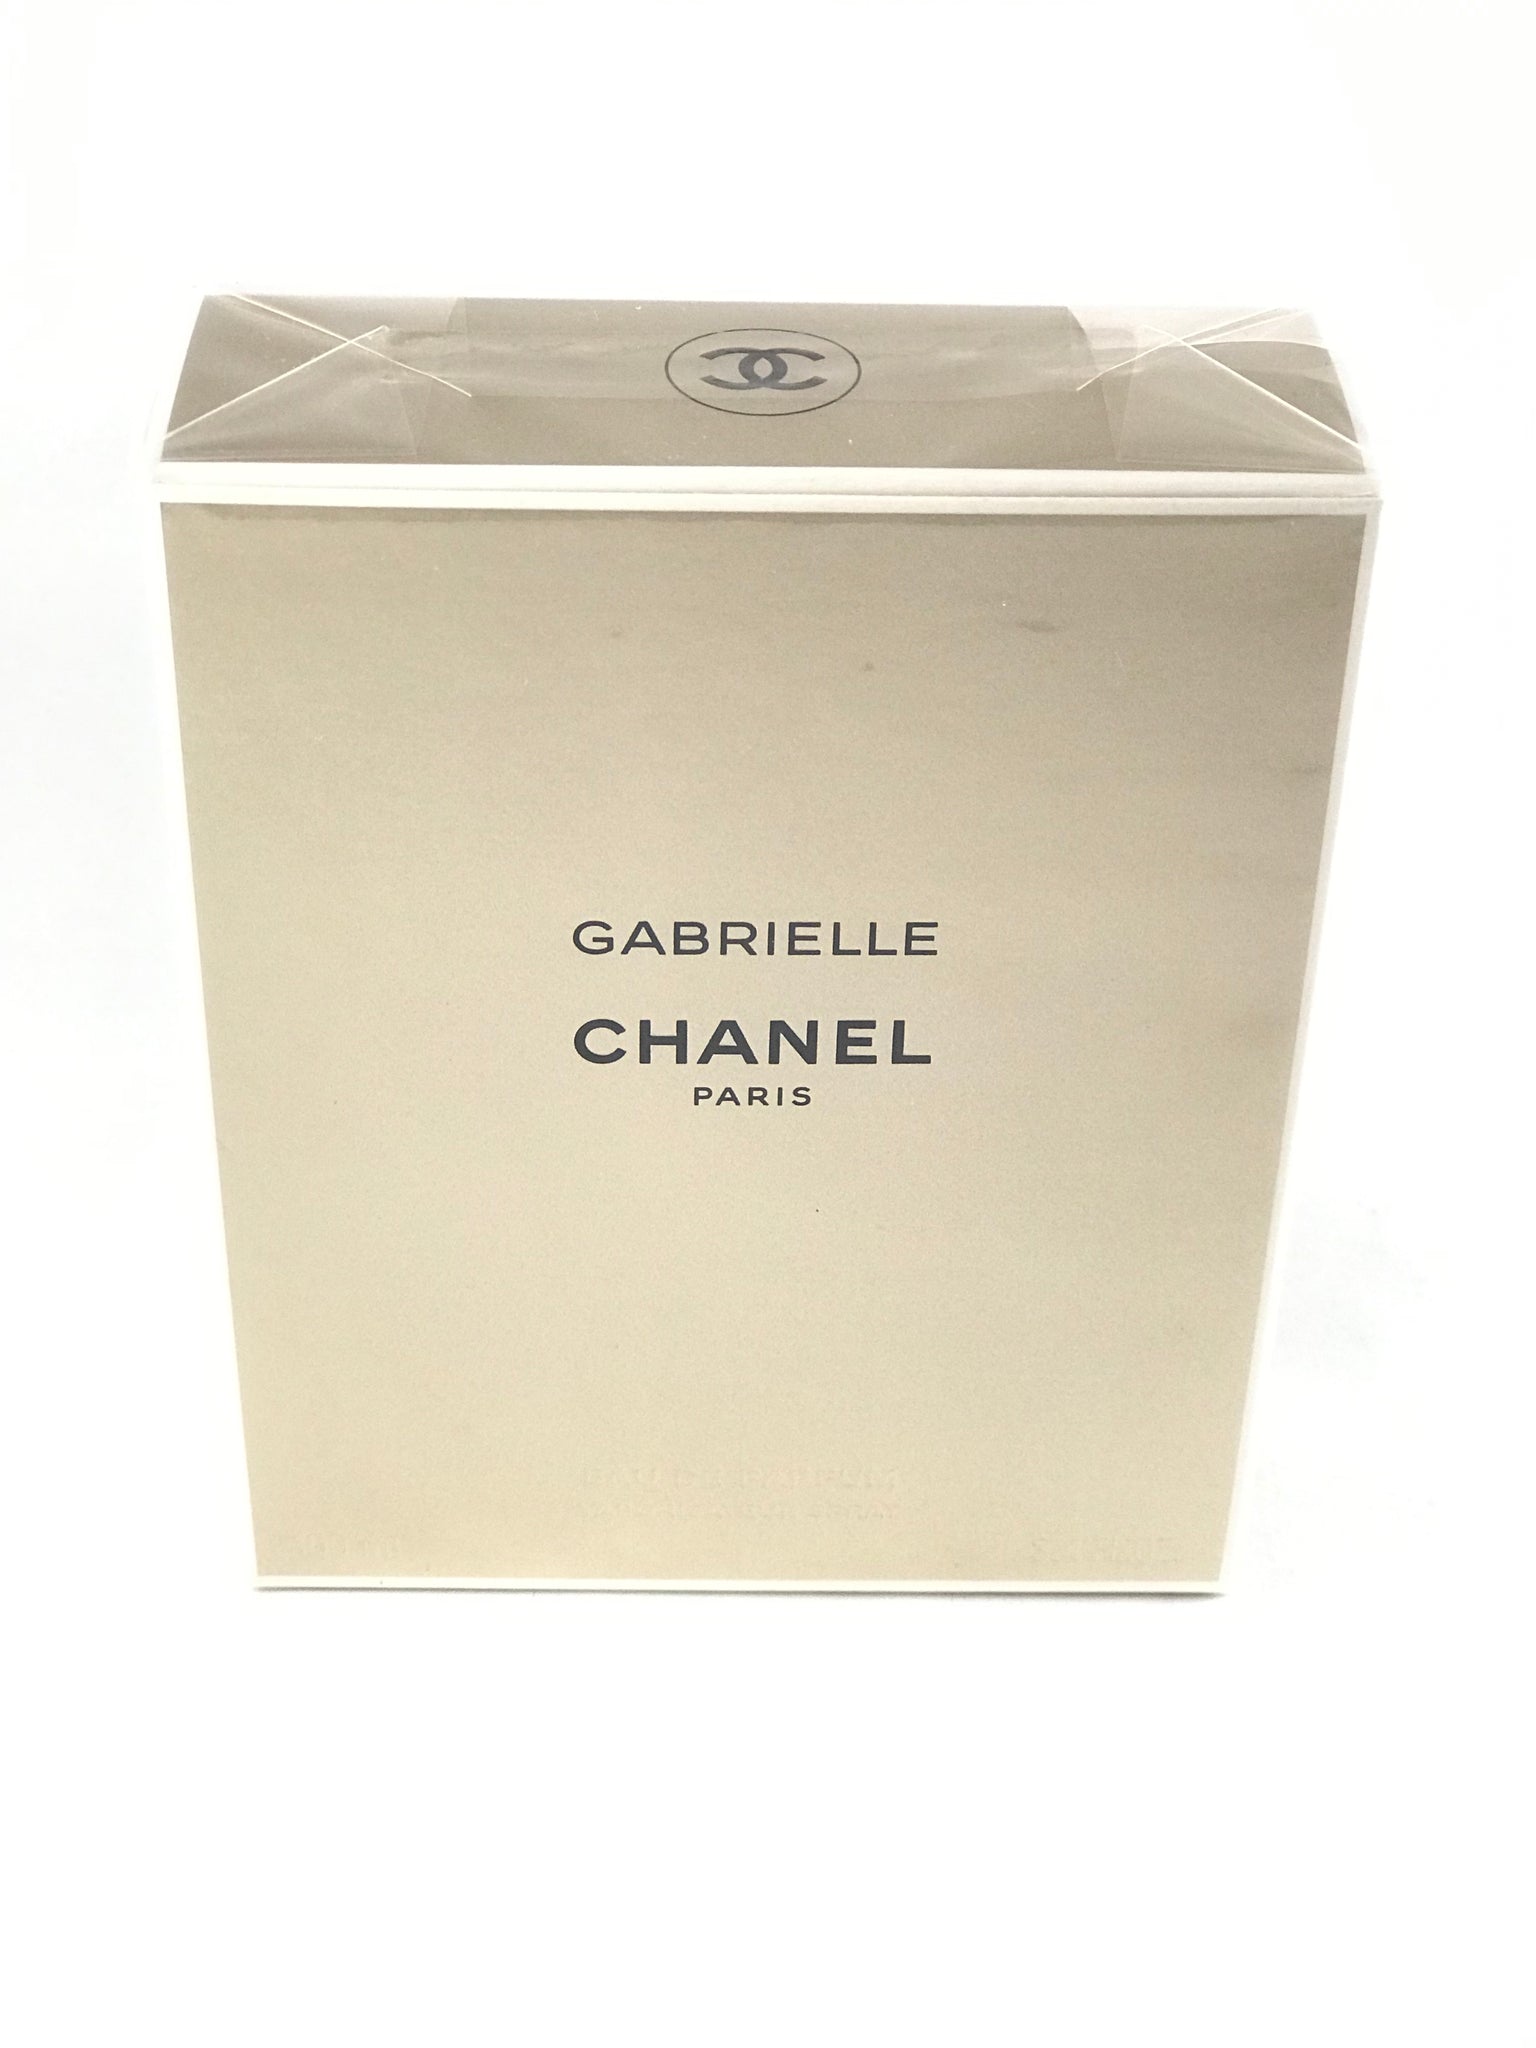 Gabrielle Chanel Eau de Parfum Spray 3.4oz – always special perfumes & gifts